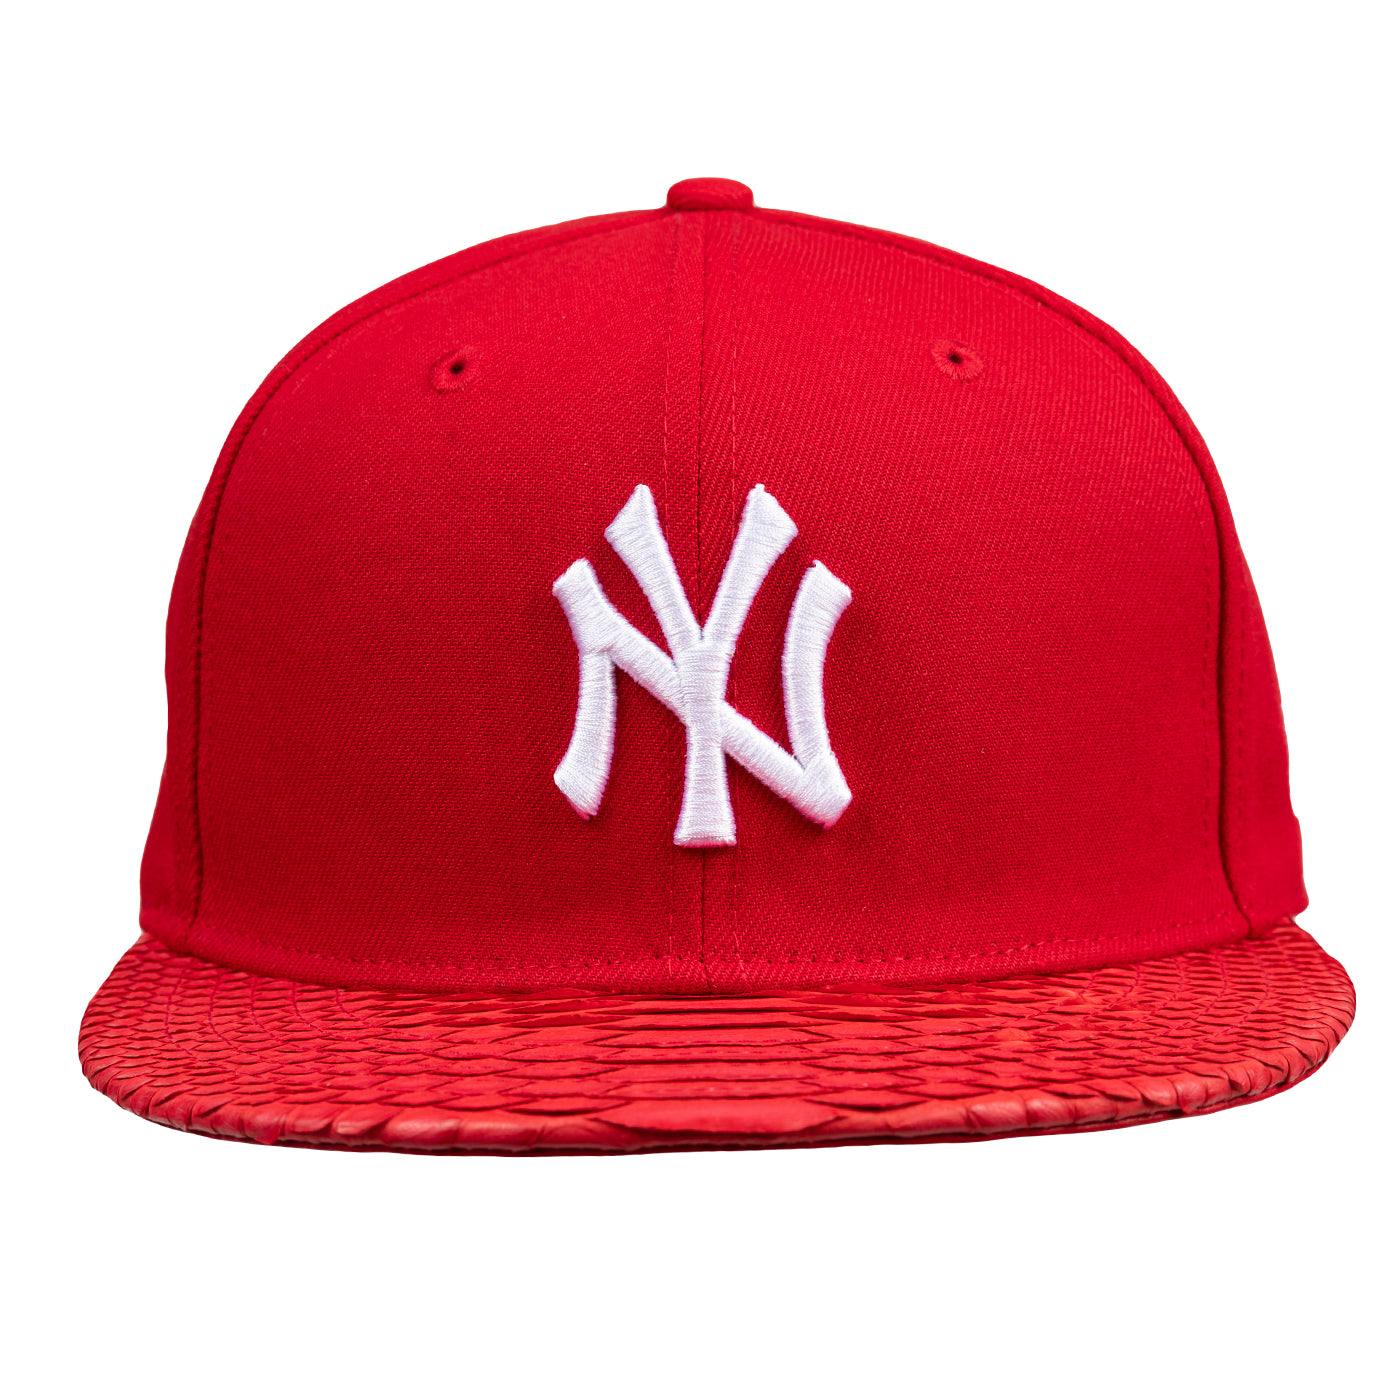 New Era | New York Yankees Trucker Hat Blue/Red/White